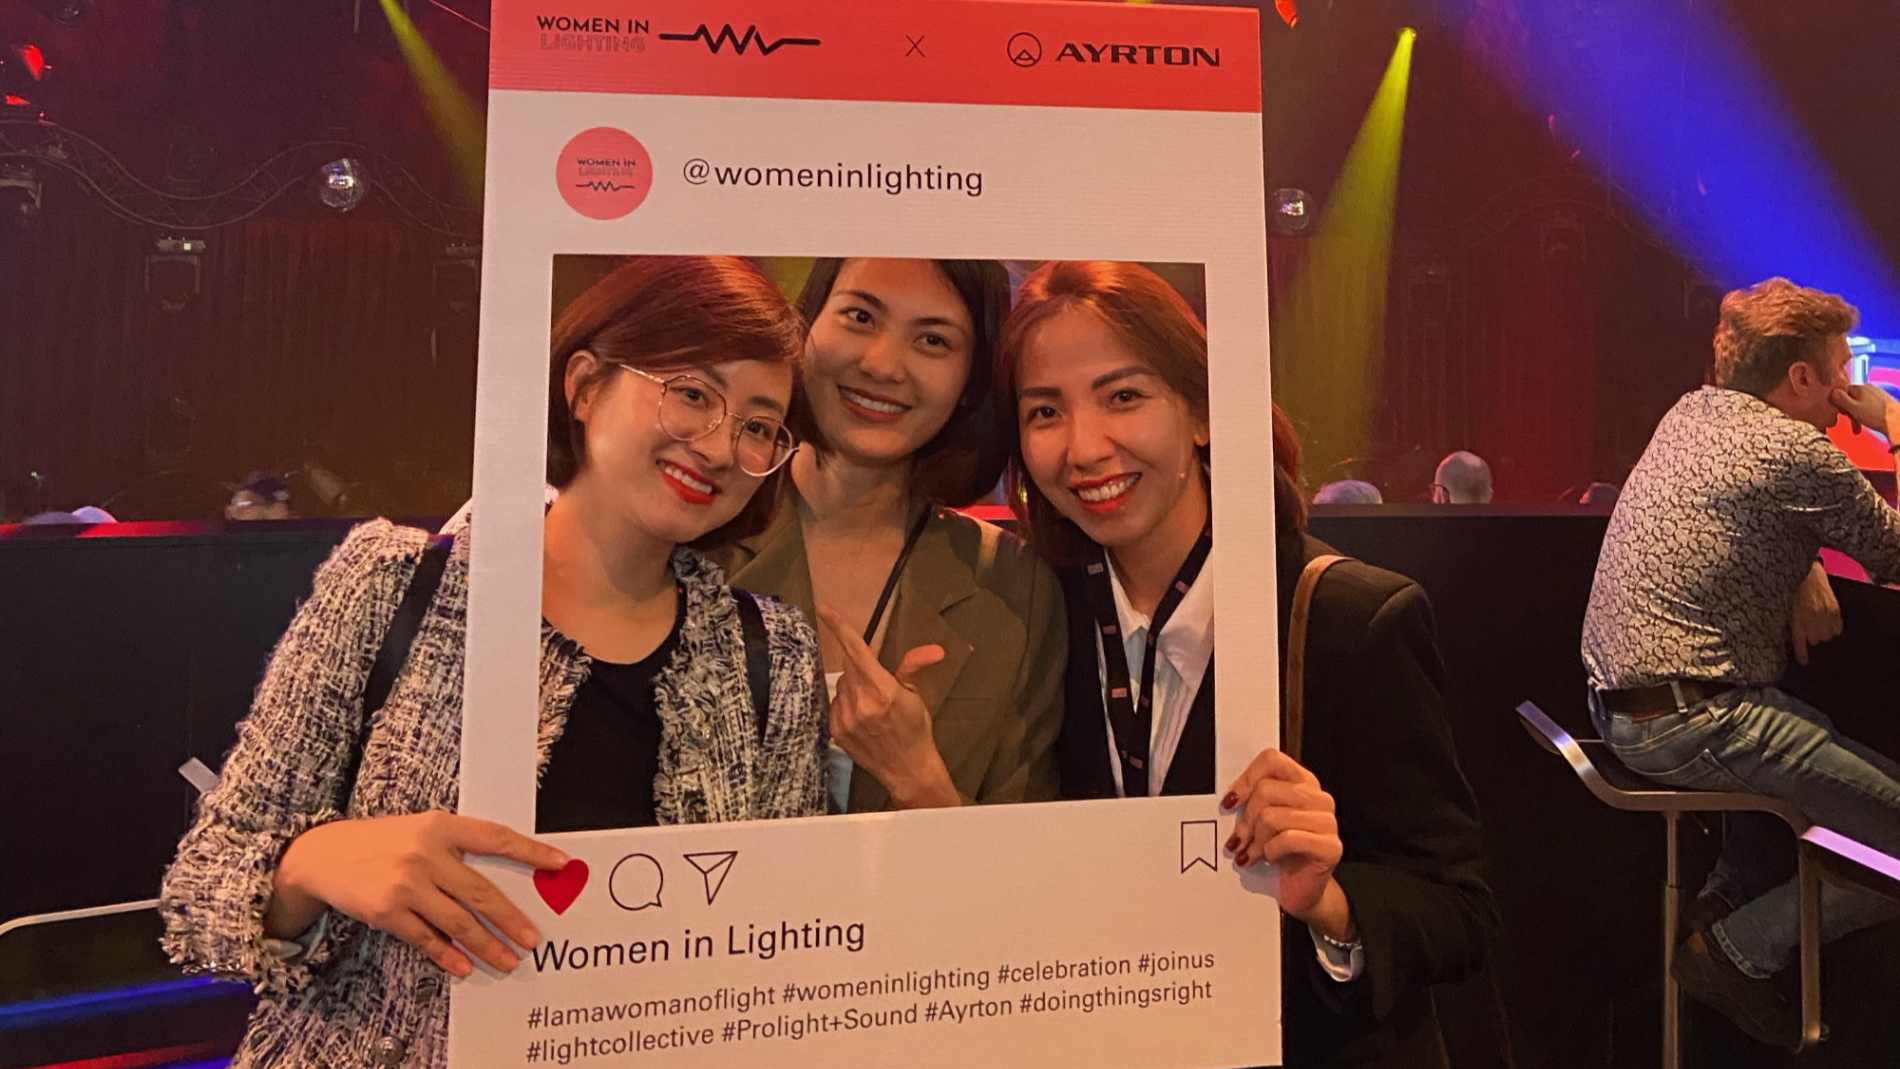 Die Initiative „Women in Lighting“ stärkt die Profilierung weiblicher Beschäftigter in Licht-Gewerken. Quelle: Ayrton